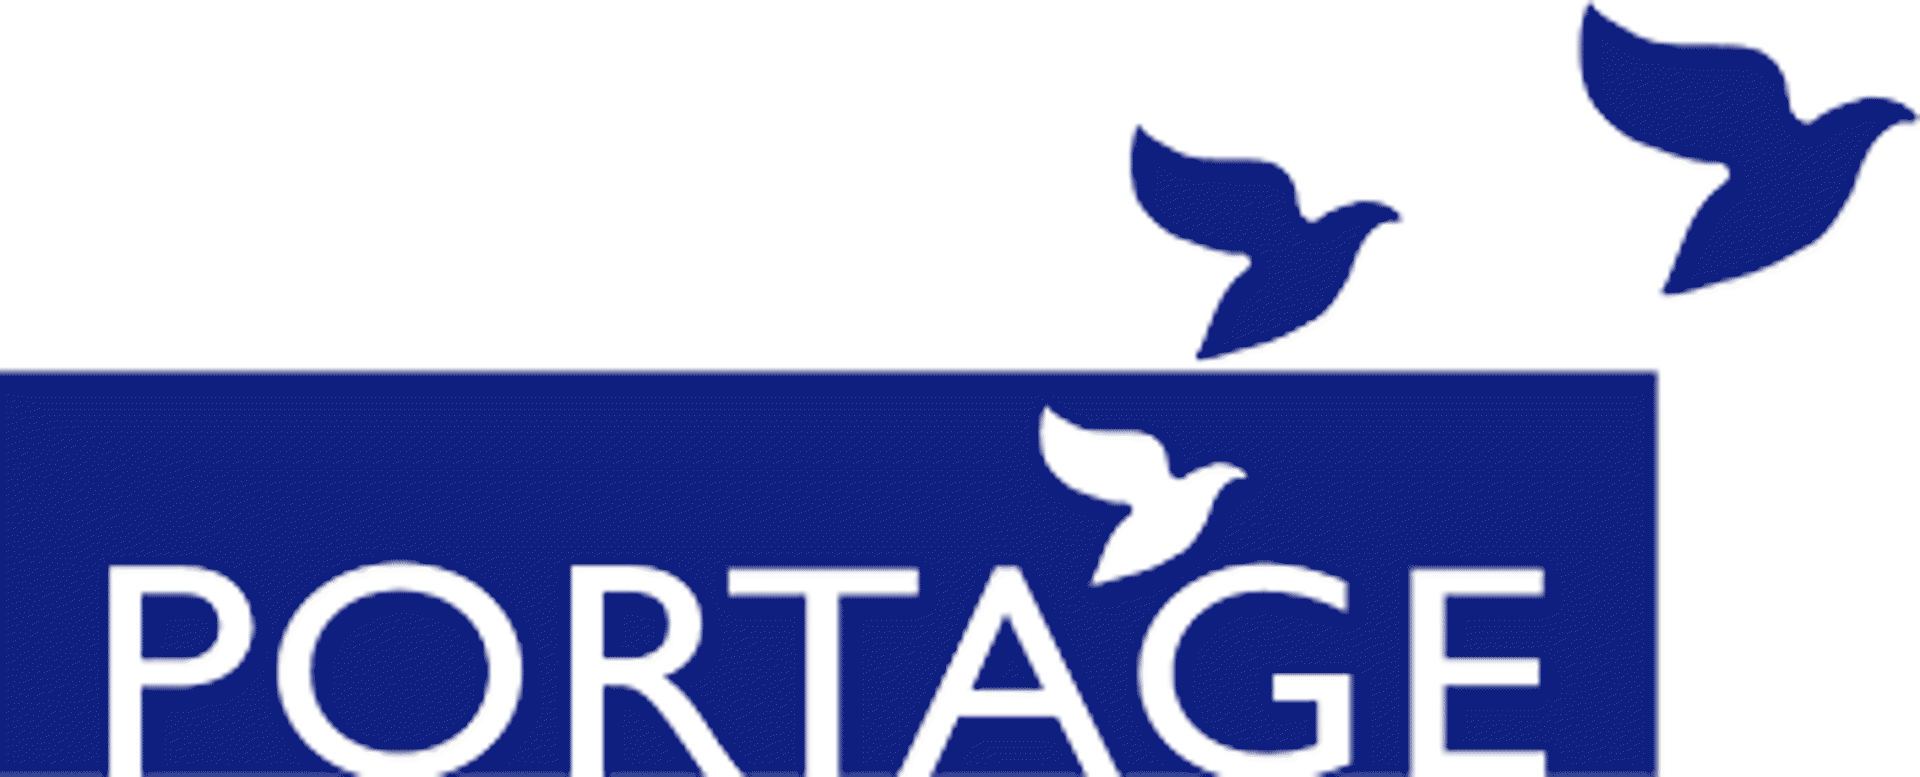 Portage Logo - Portage, Centre de jour - Adultes (Montreal, QC) | Clinia